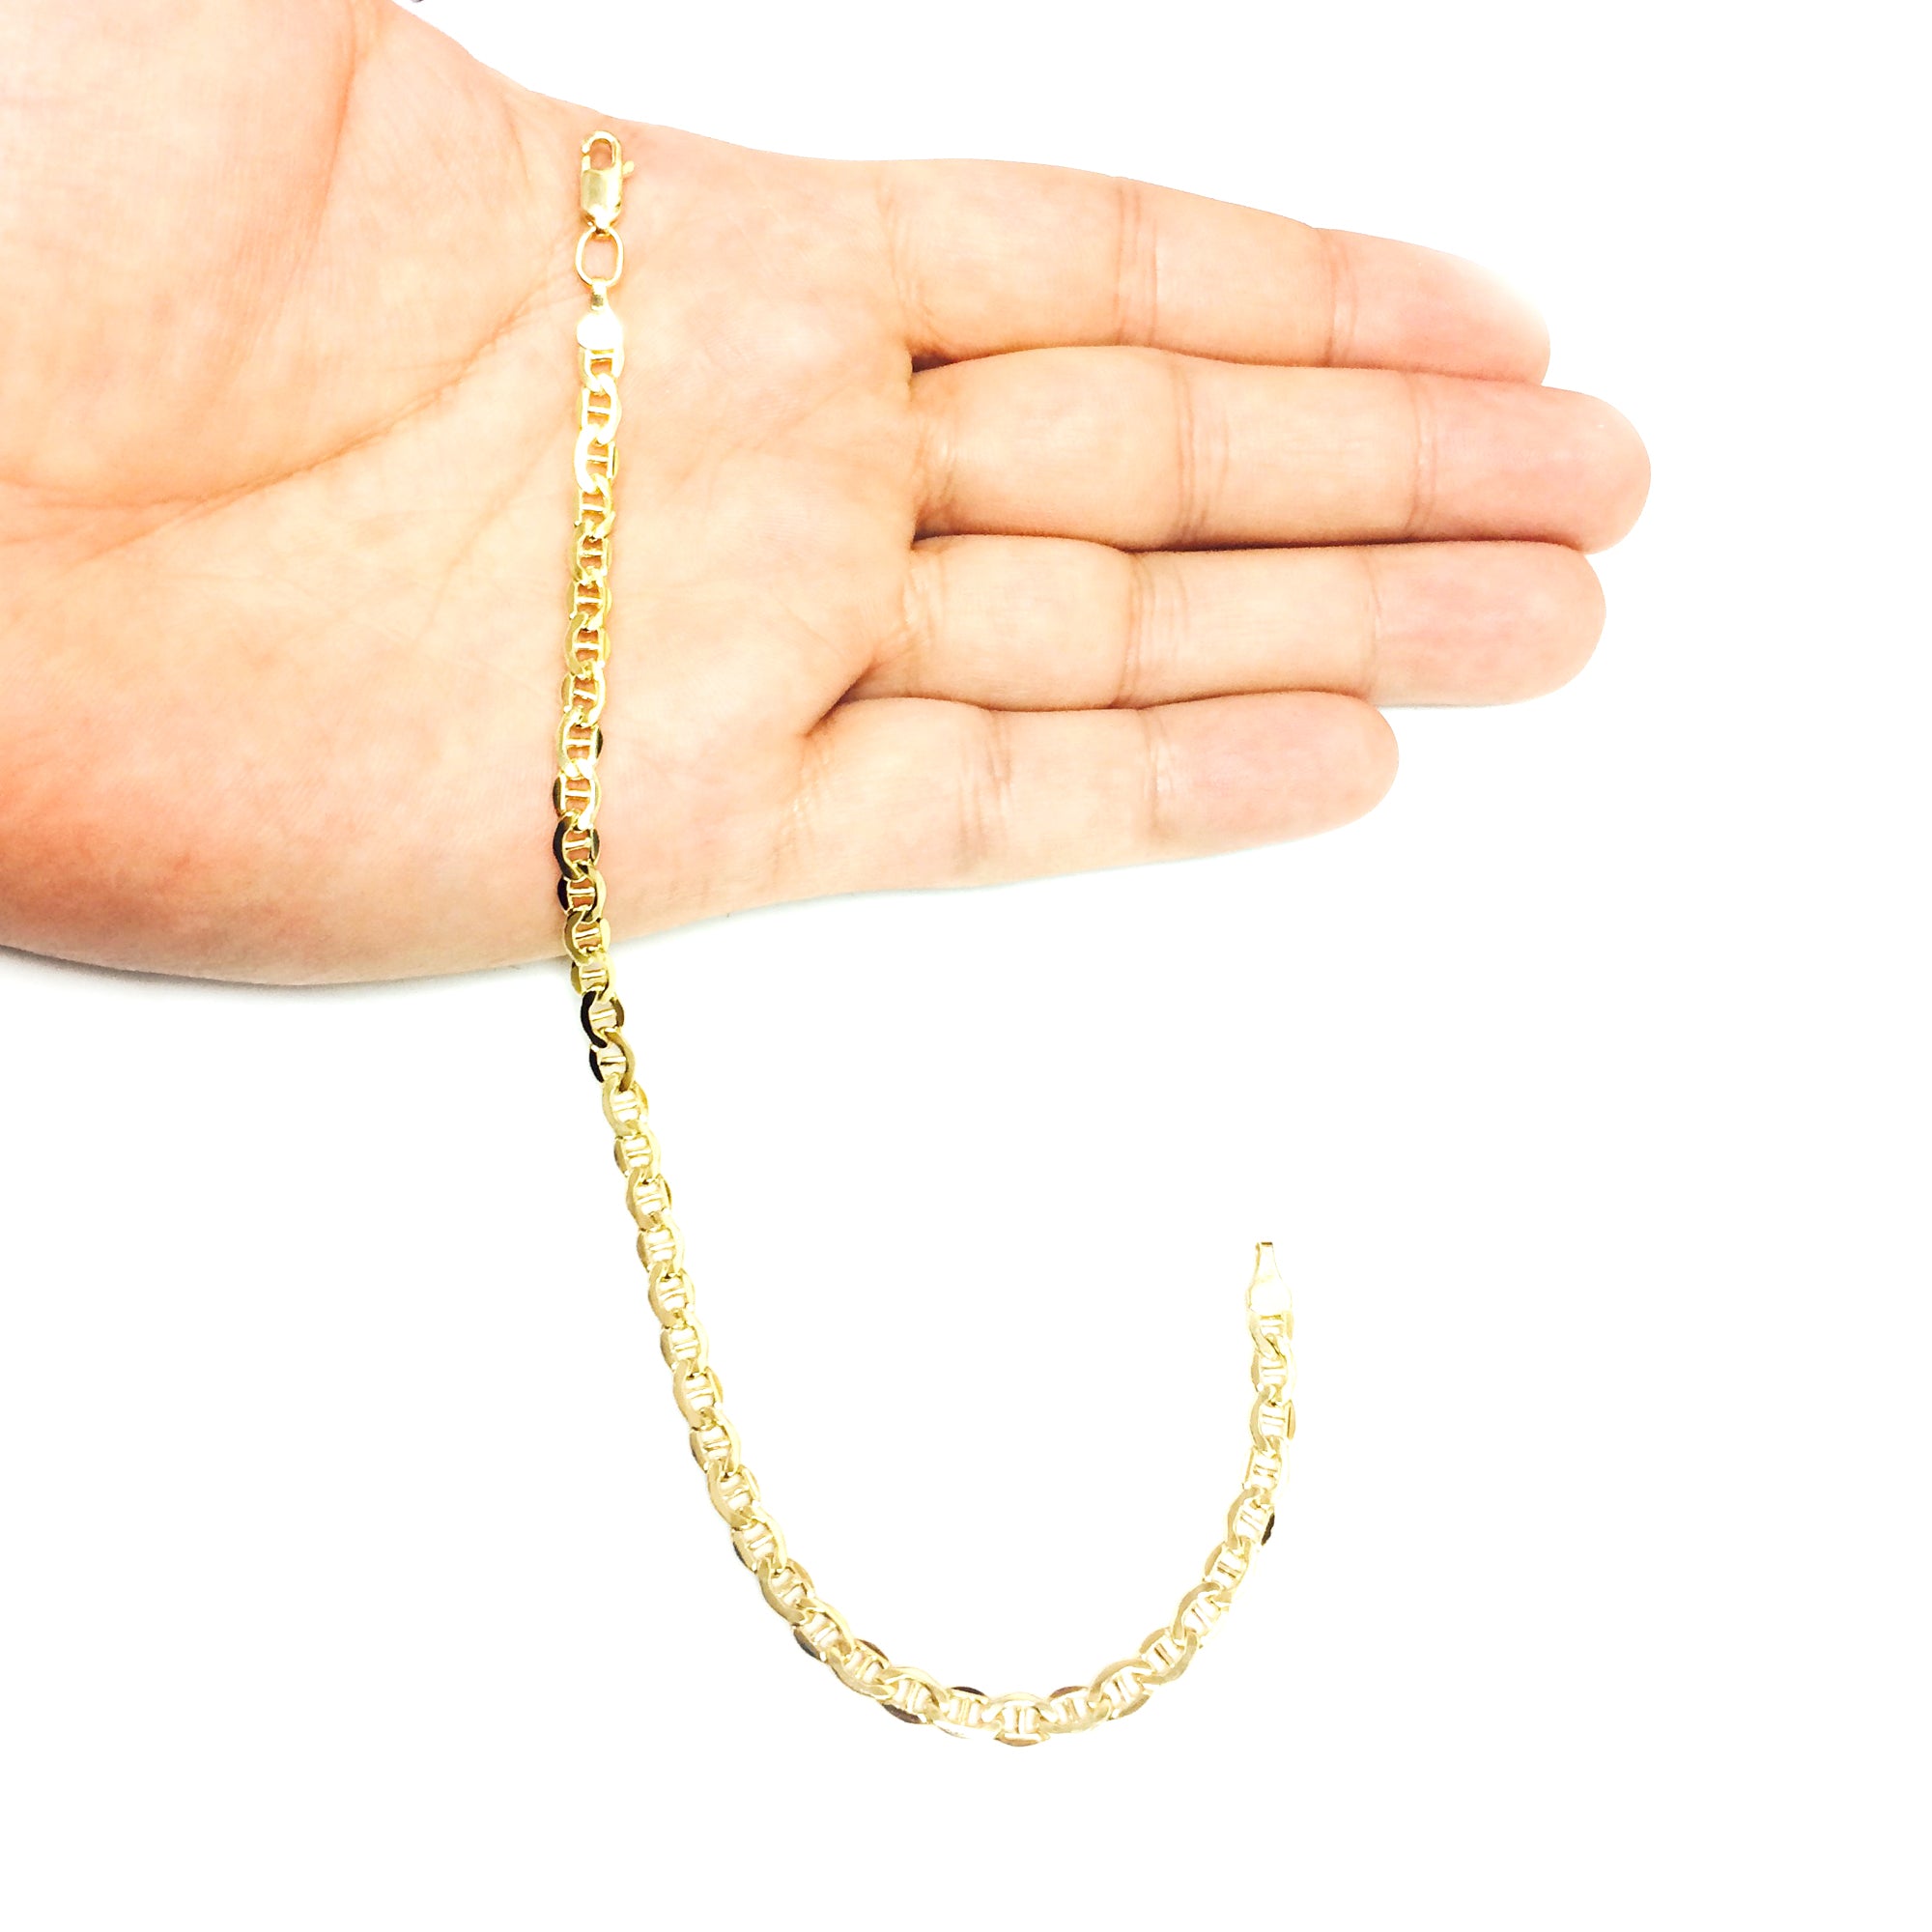 Pulsera de cadena marinera sólida con relleno de oro amarillo de 14 quilates, 4,5 mm, joyería fina de diseño de 8,5" para hombres y mujeres